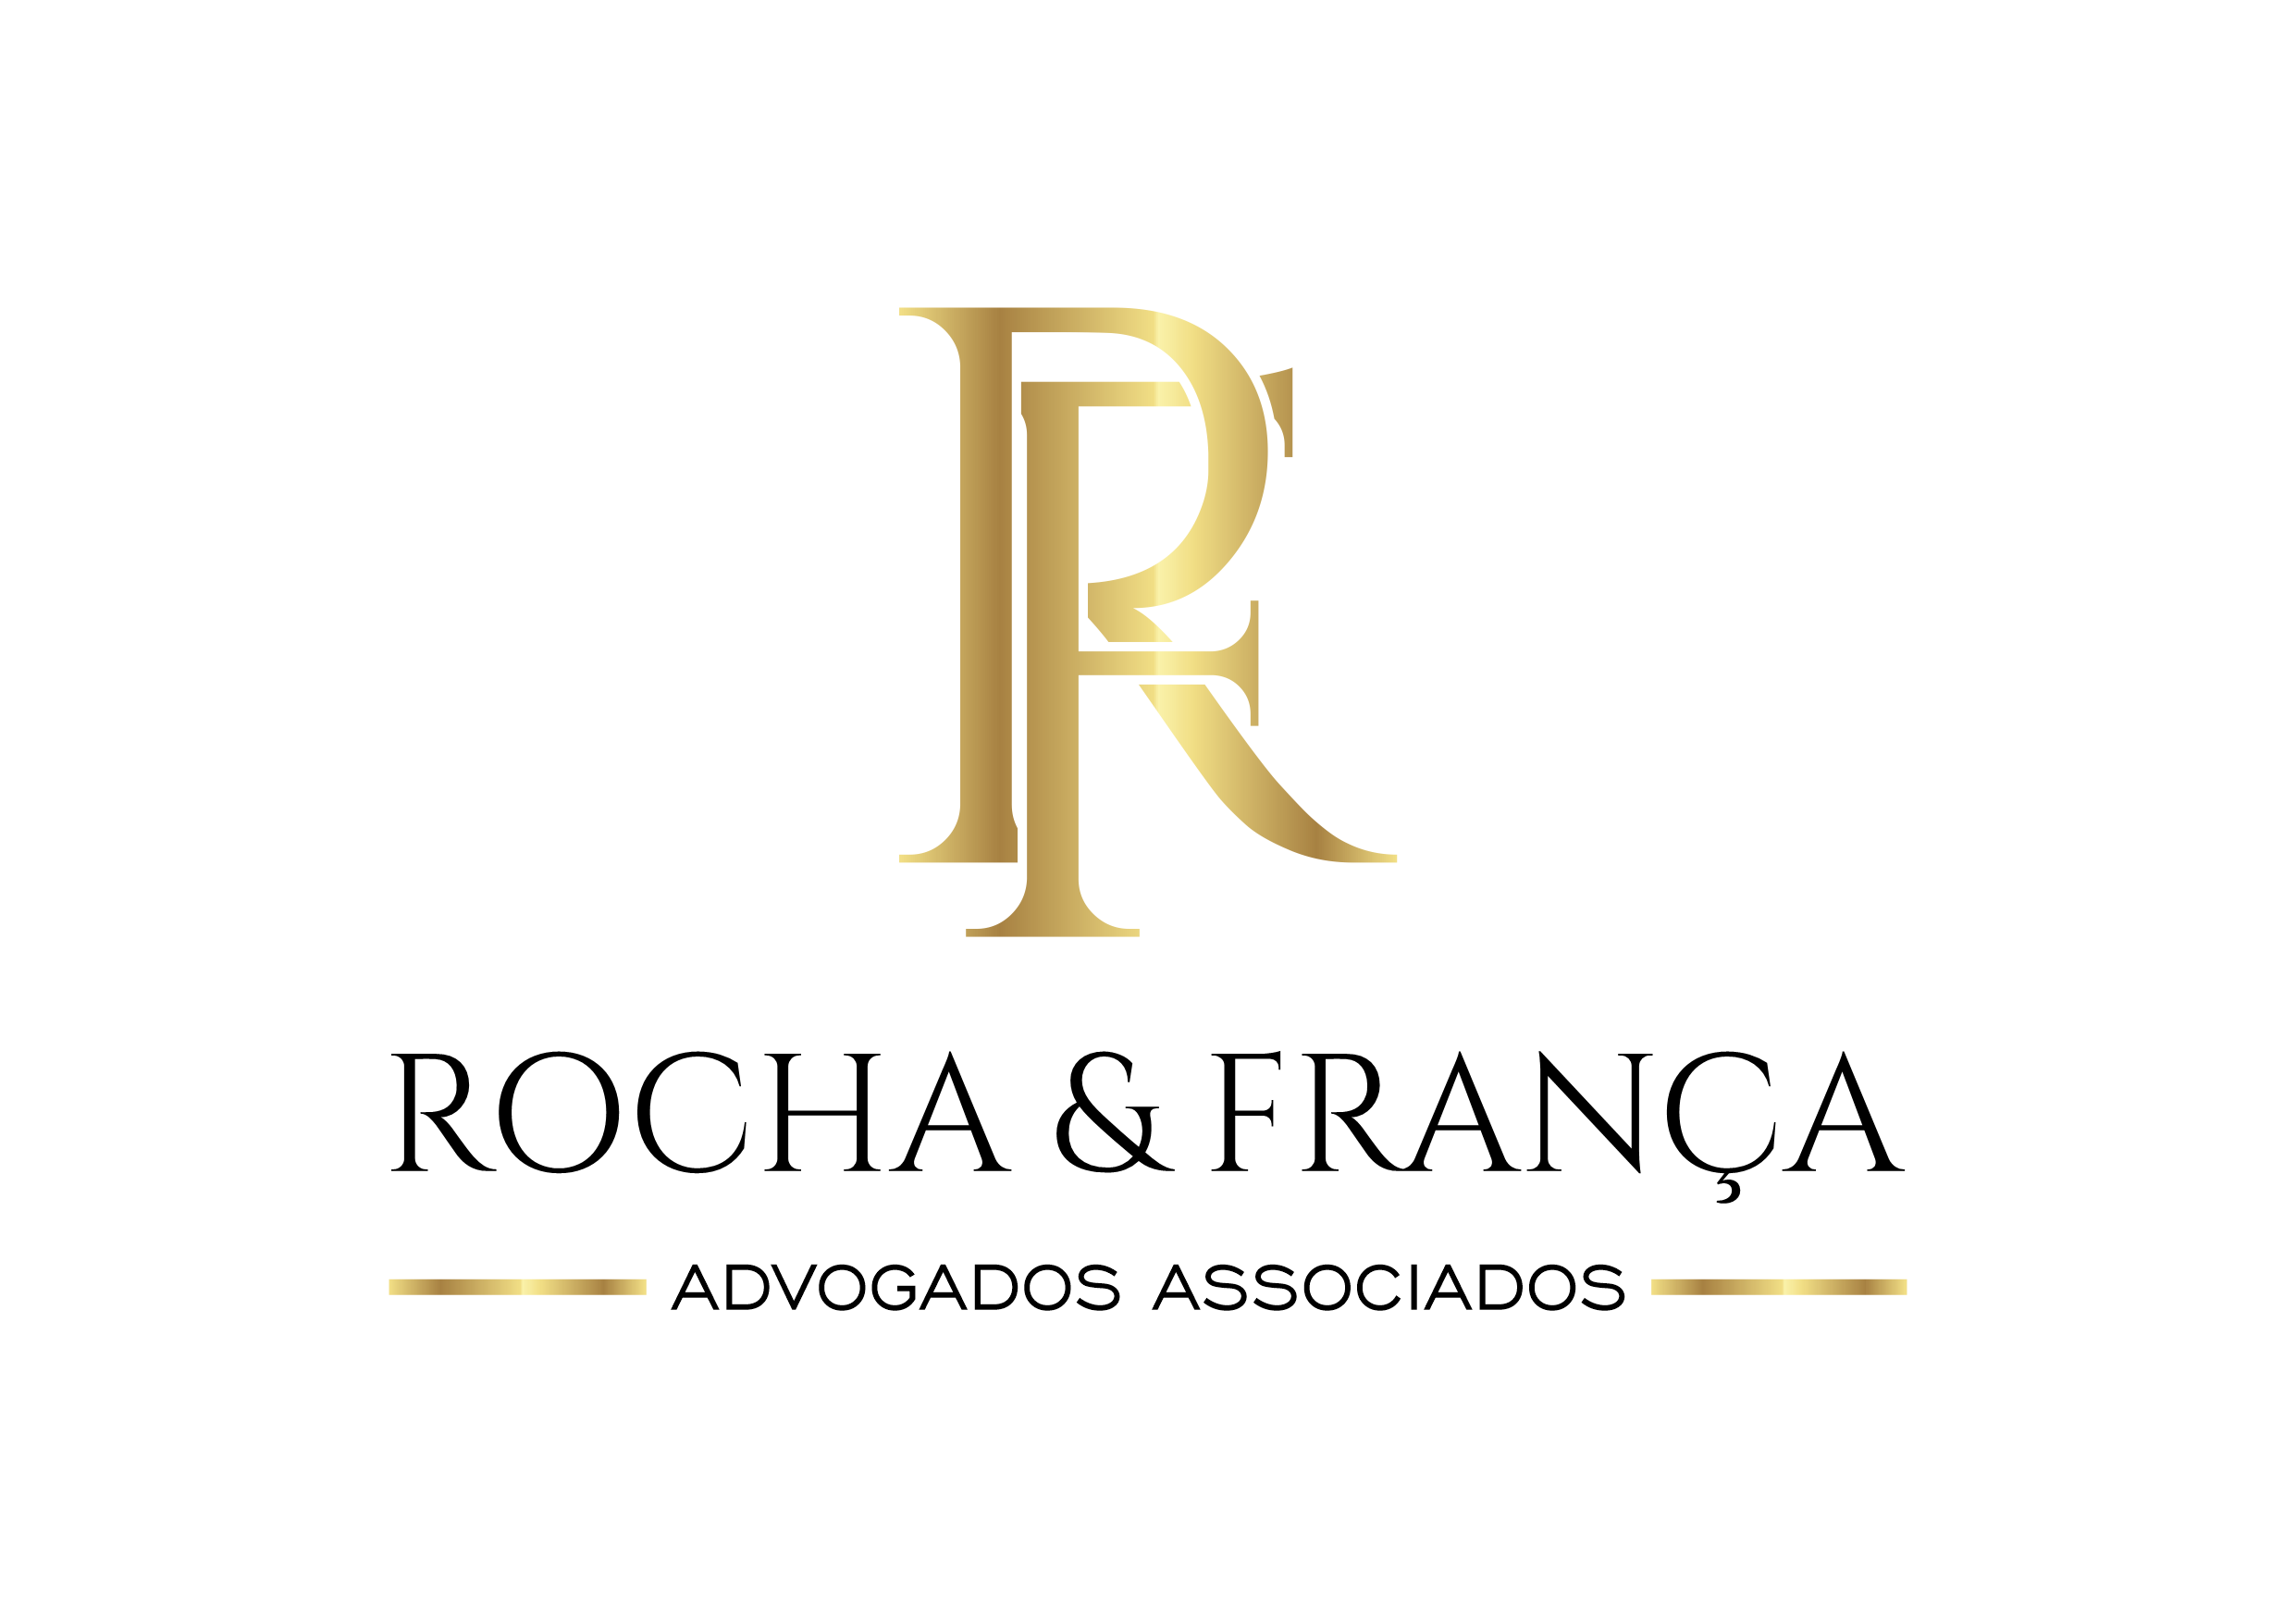 Rocha-França-Advogados-Associados-Logotipo-v02-Transparente